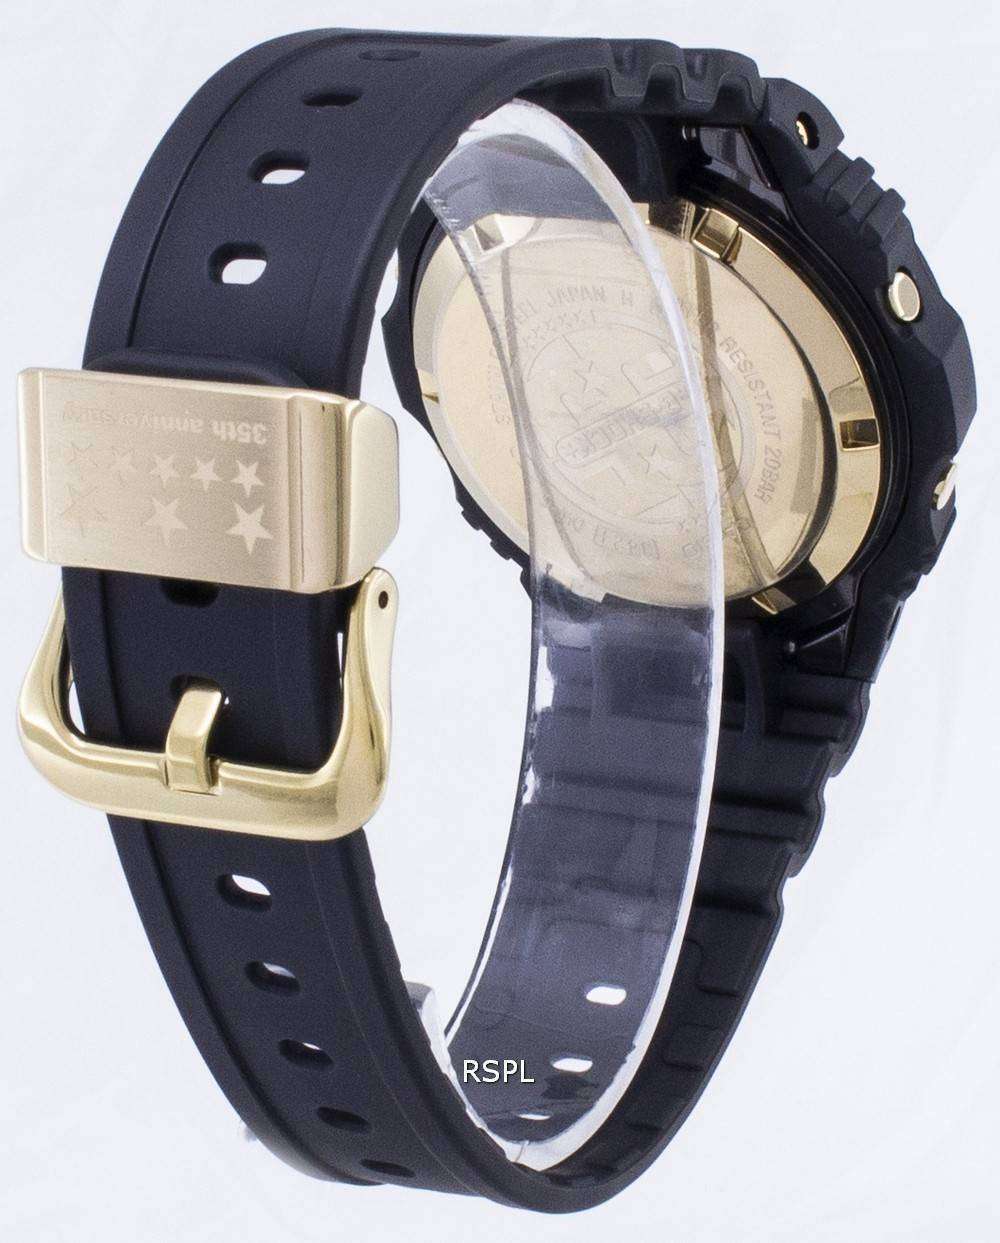 カシオ G ショック社殿-5735 D-1 b DW5735D 1B 耐衝撃デジタル 200 M メンズ腕時計 Japan